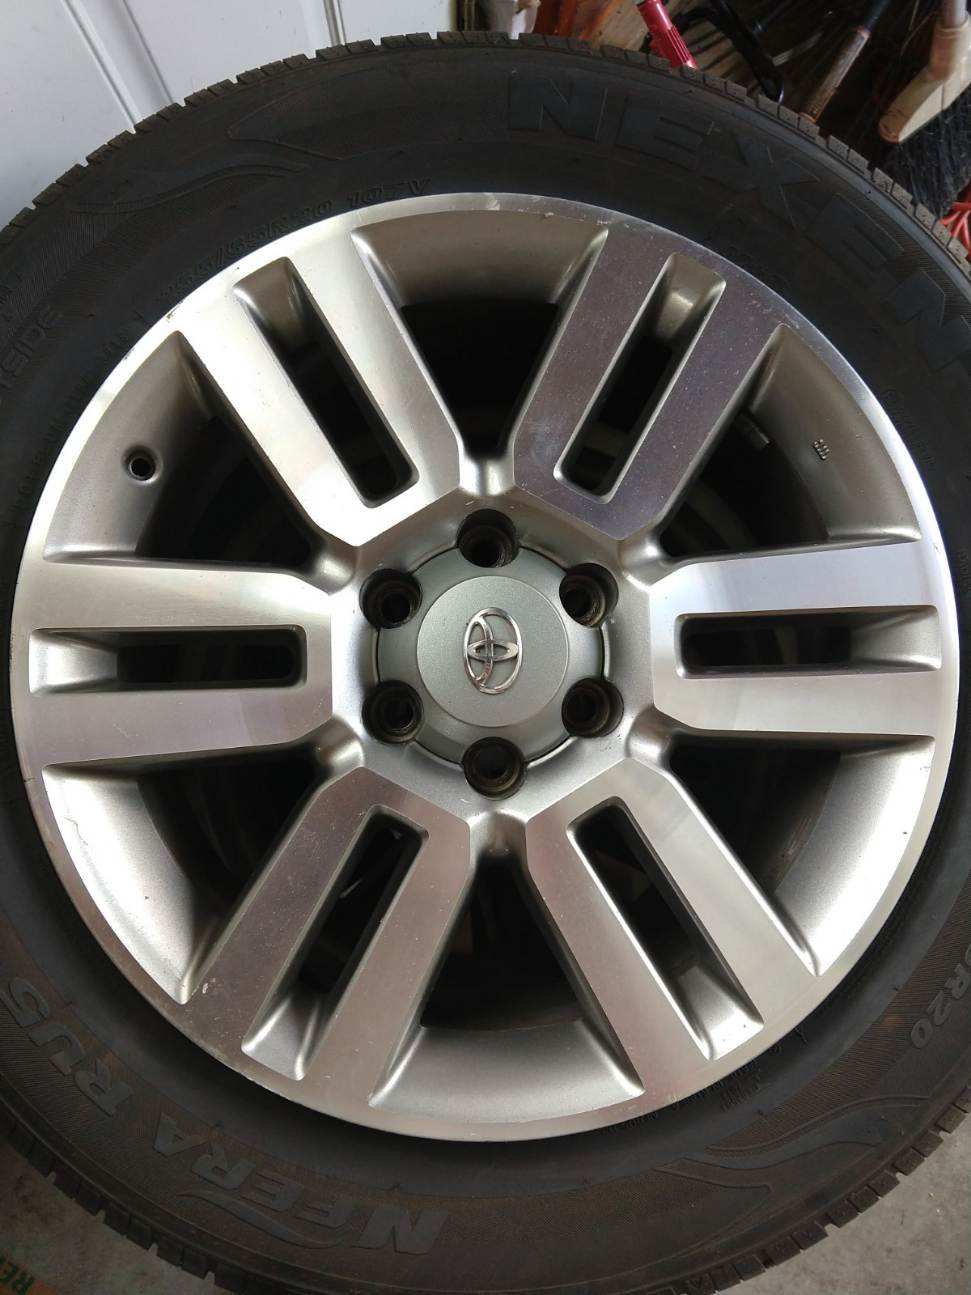 FS PA: Limited 5th gen wheels, New Tires 00-f7a5b006-44f3-479d-b273-665ba14e7316-jpeg